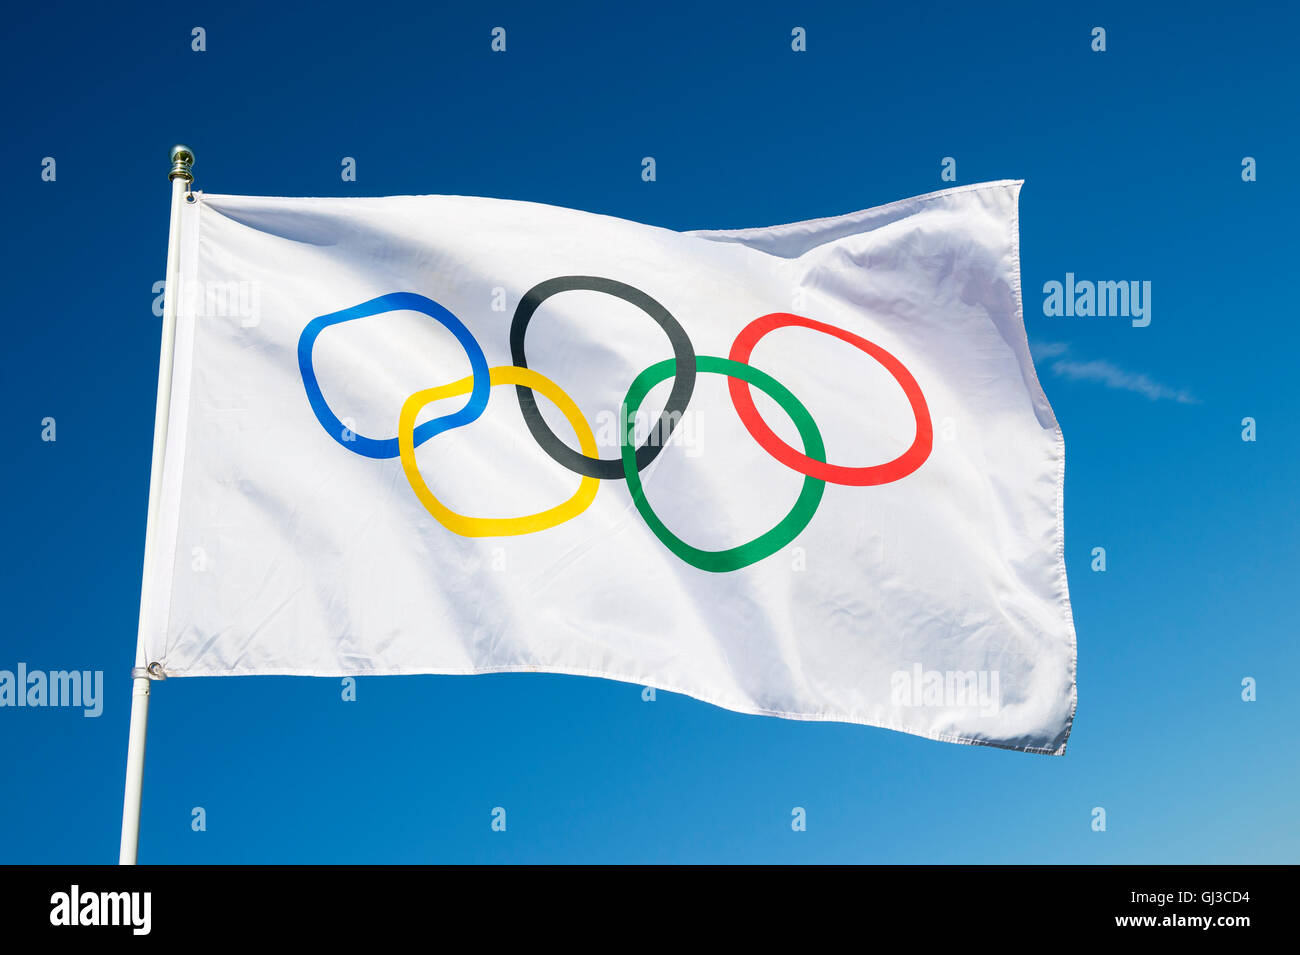 RIO DE JANEIRO - 27. März 2016: Eine olympische Fahne flattert im Wind gegen strahlend blauen Himmel. Stockfoto